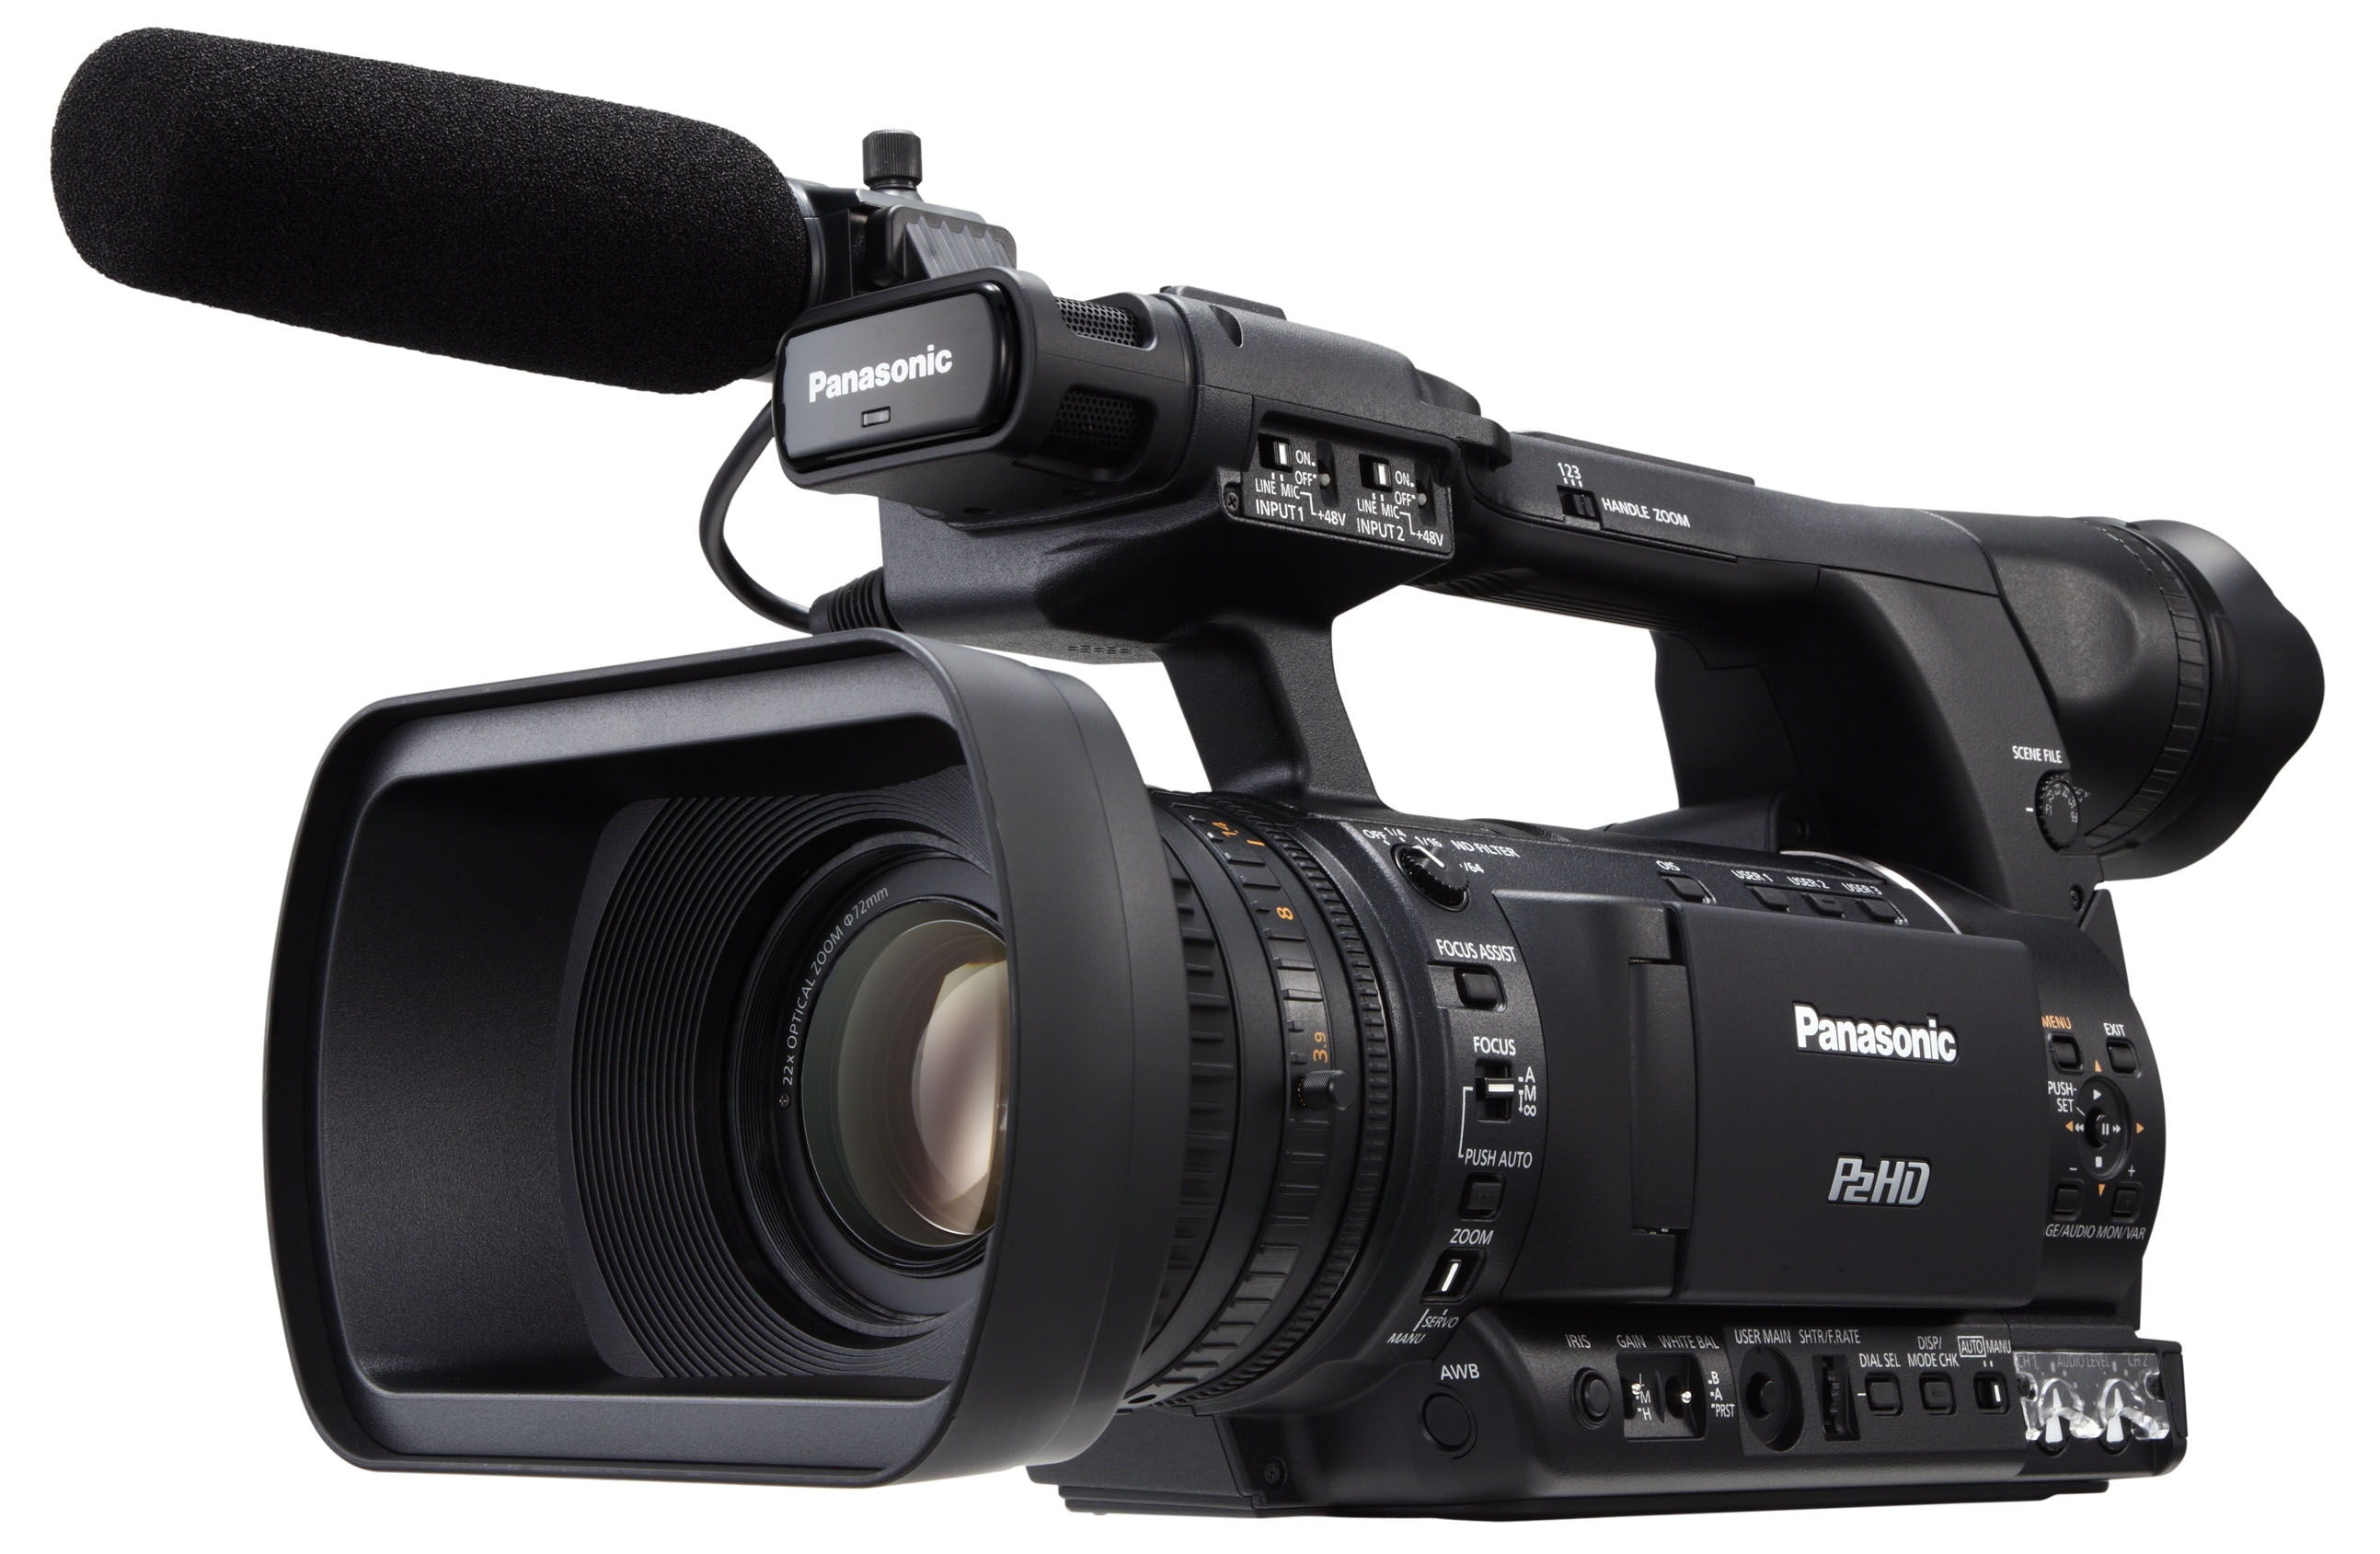 AG-HPX250EJ   Videocamara Panasonic   accesorios y repuestos